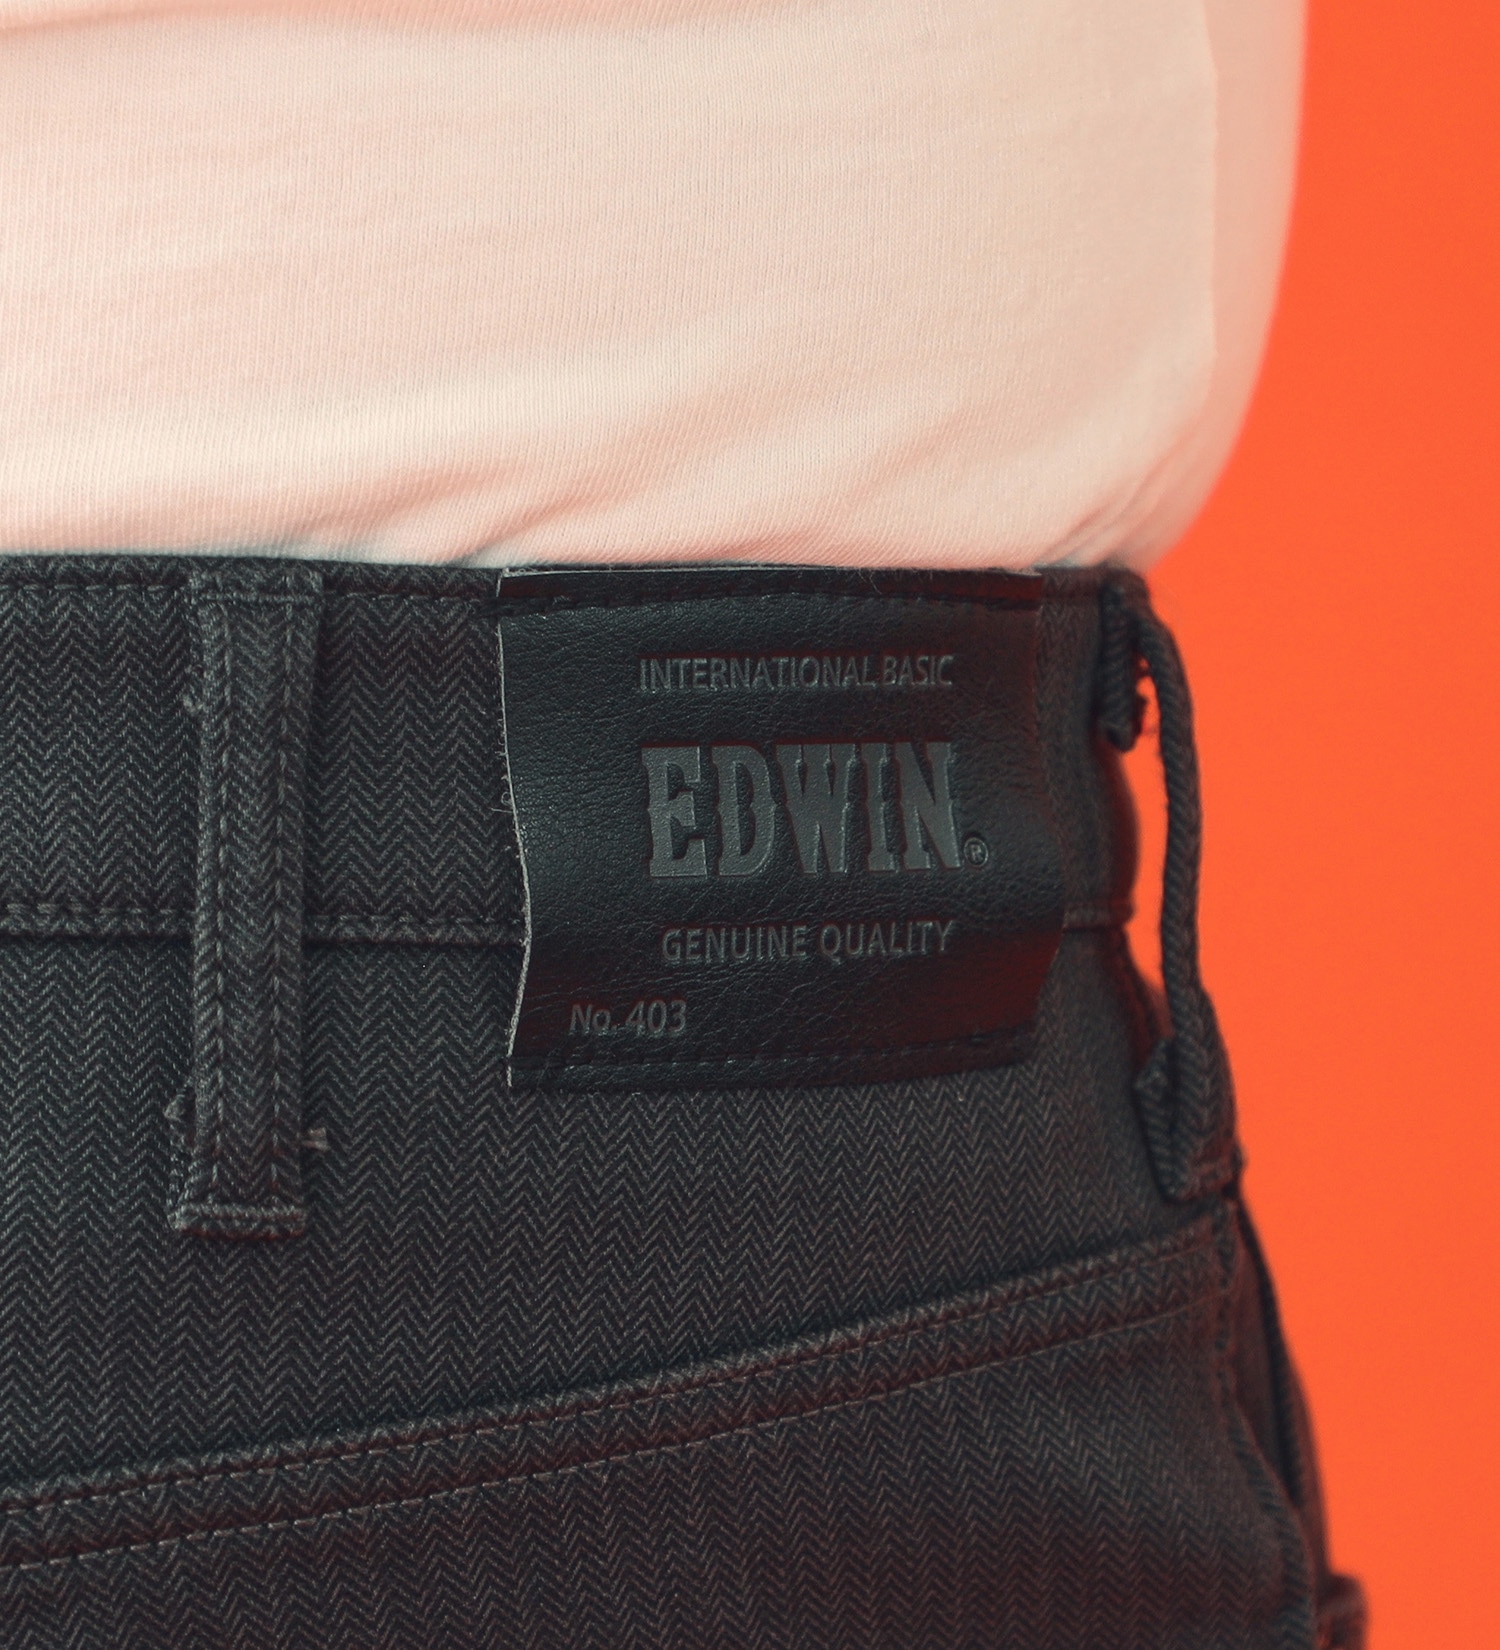 EDWIN(エドウイン)の【先行SALE】【大きいサイズ】2層で暖かい EDWIN インターナショナルベーシック レギュラーストレートパンツ403 WILD FIRE 2層ボンディング構造 【暖】|パンツ/パンツ/メンズ|チャコールグレー